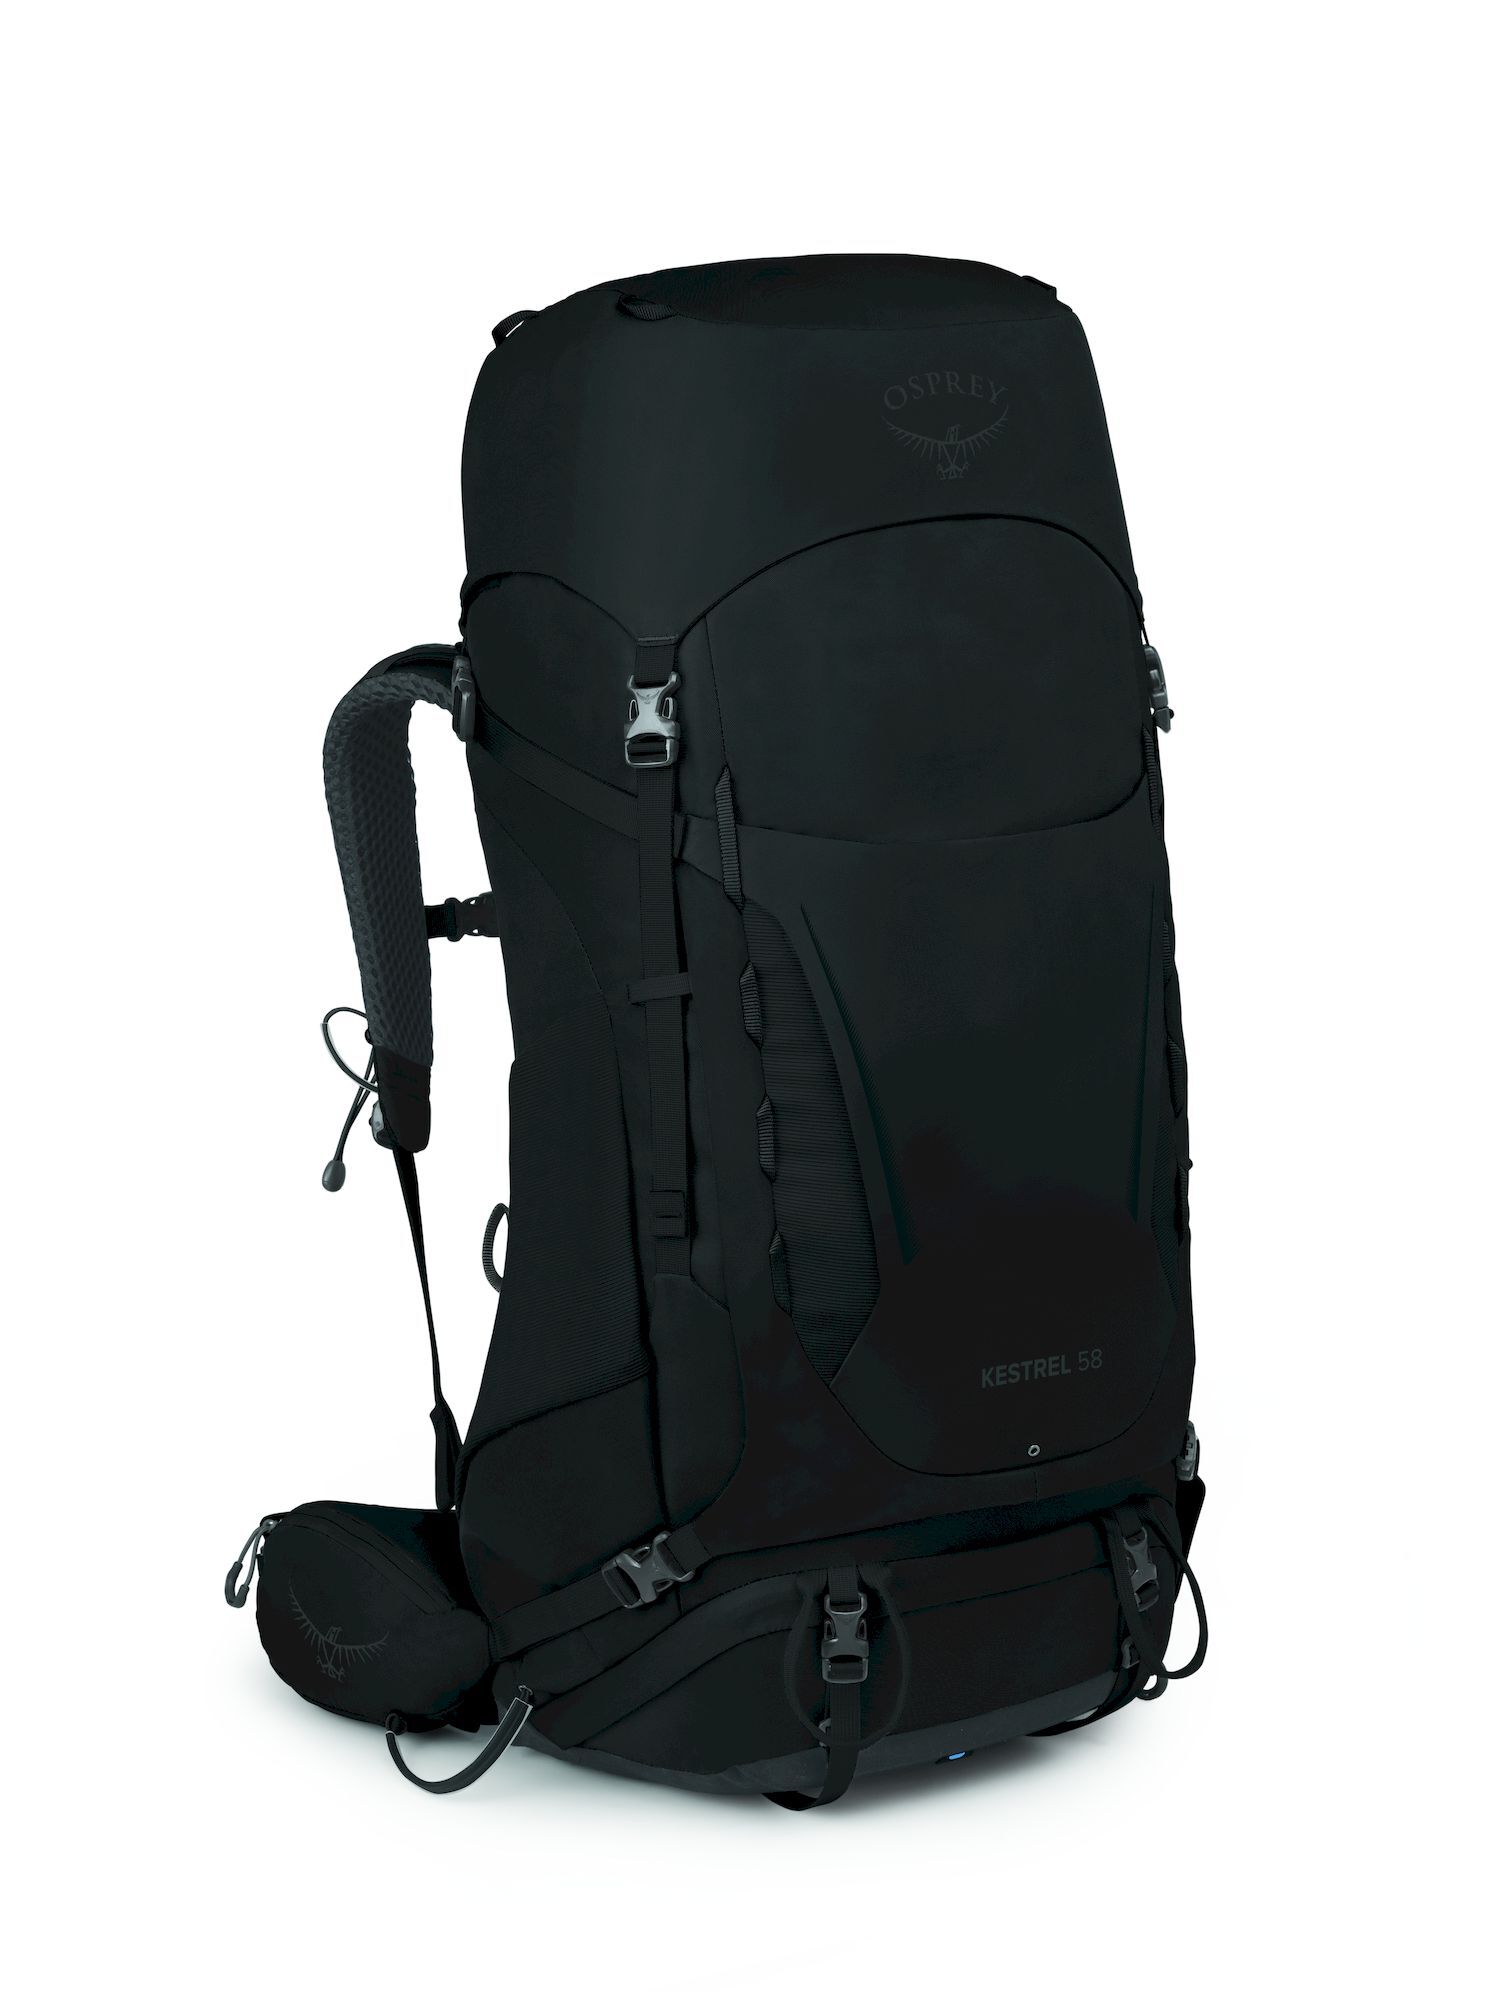 Osprey Kestrel 58 - Hiking backpack - Men's